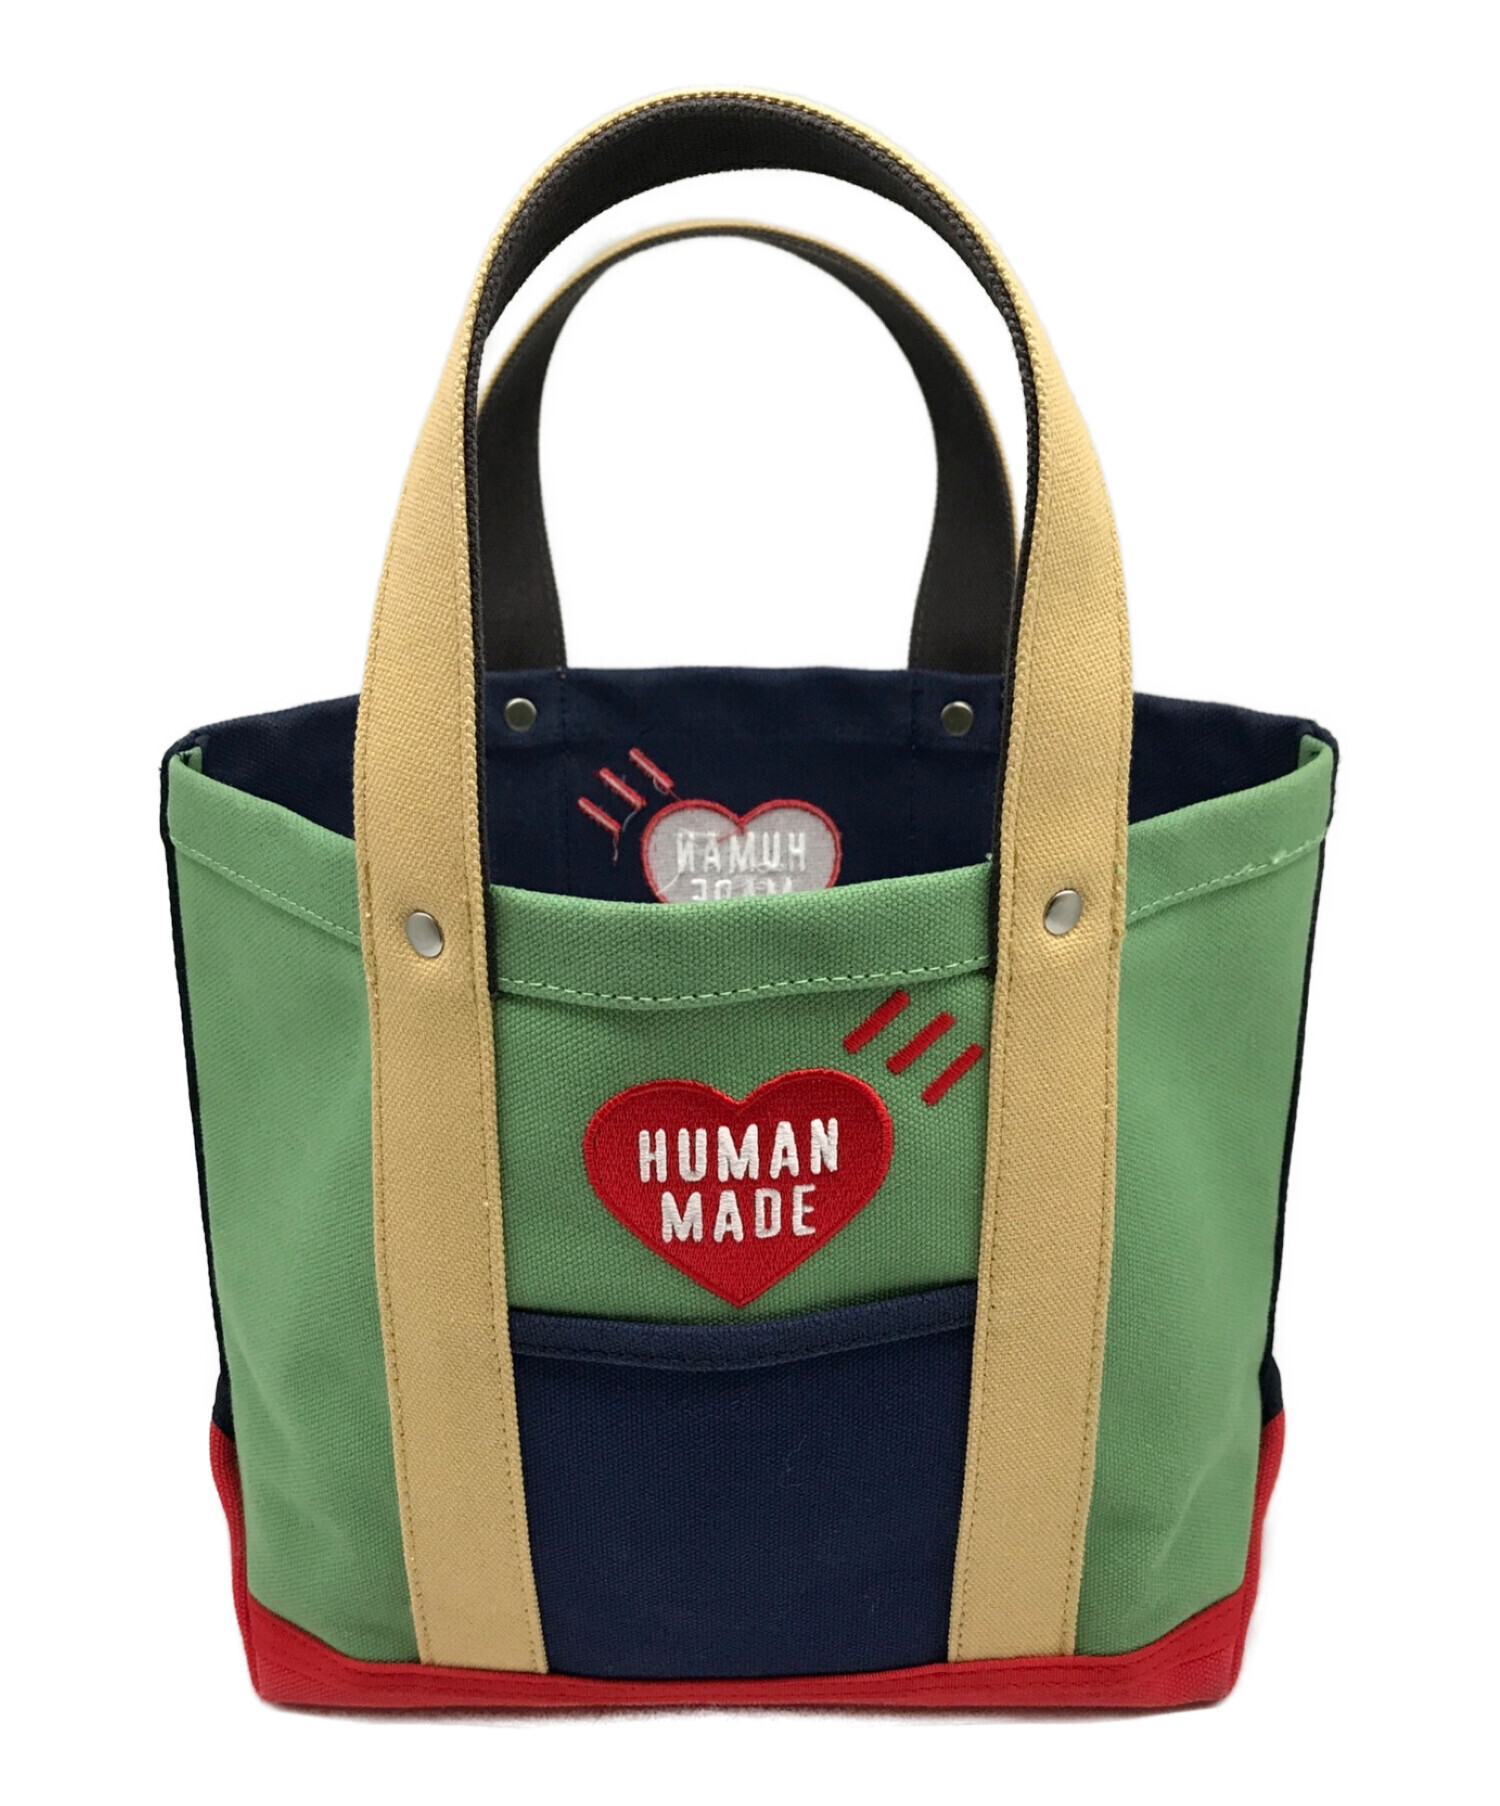 HUMAN MADE (ヒューマンメイド) multi color tote bag small マルチ カラー トートバッグ スモール  ネイビー×レッド サイズ:実寸参照